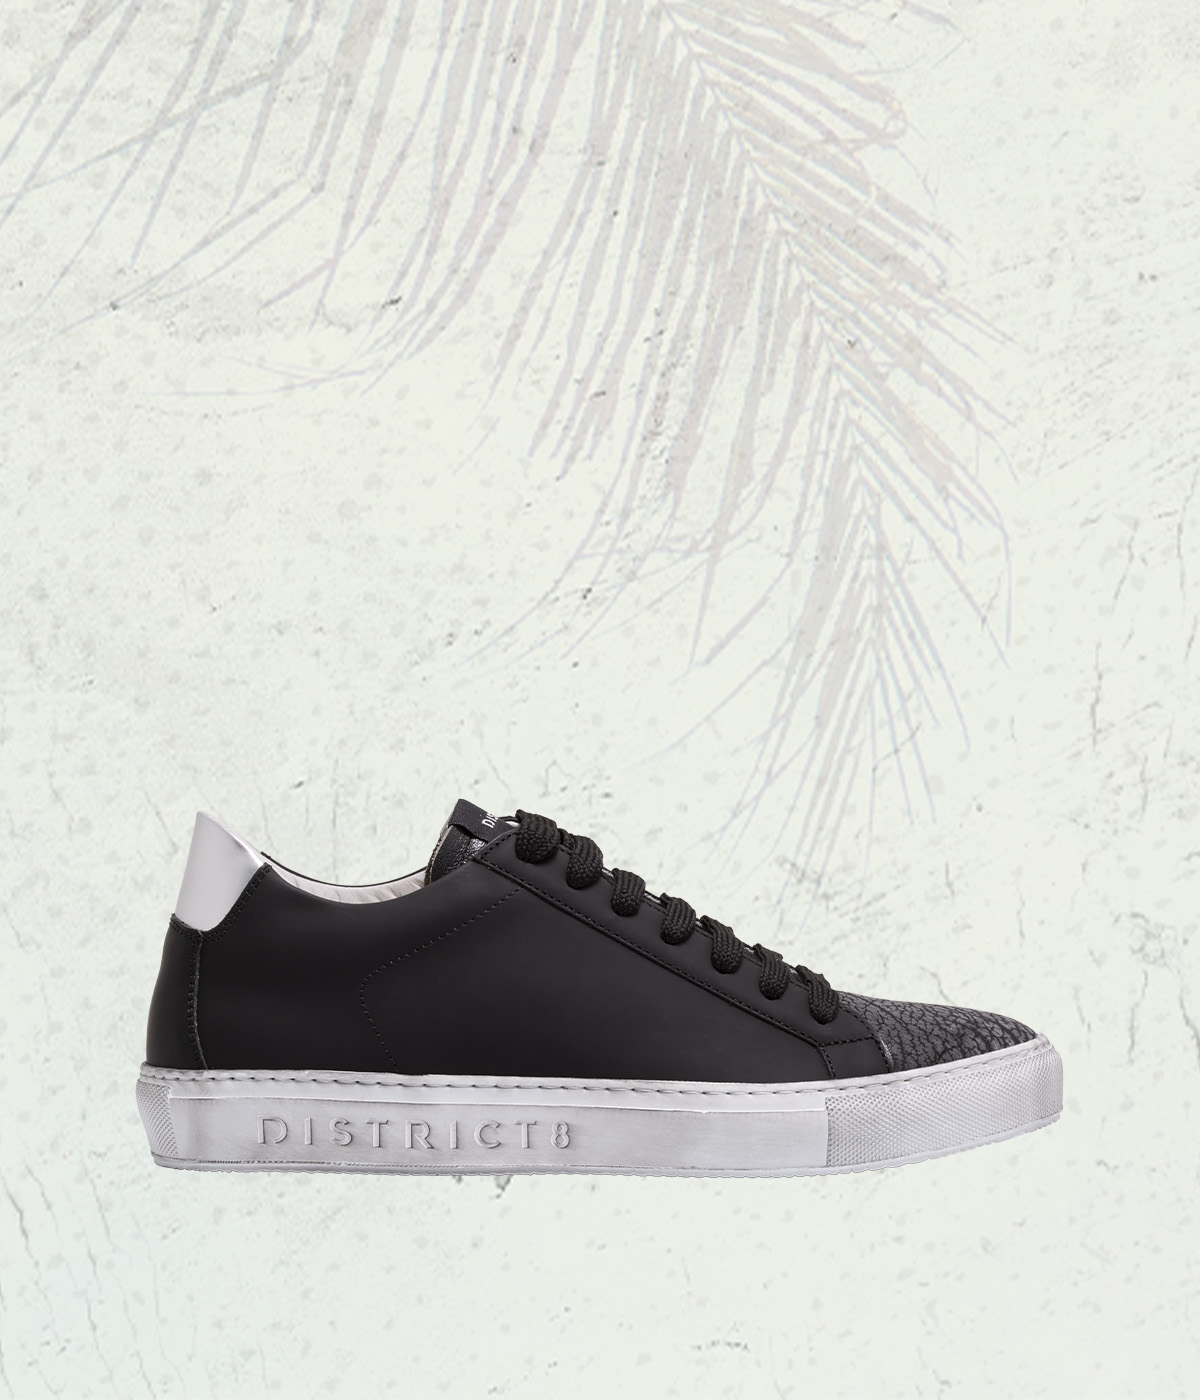 DISTRICT8 - Sneakers Wet Paint (844) in pelle gommata nera, punta in vera pelle di squalo e logo laserizzato